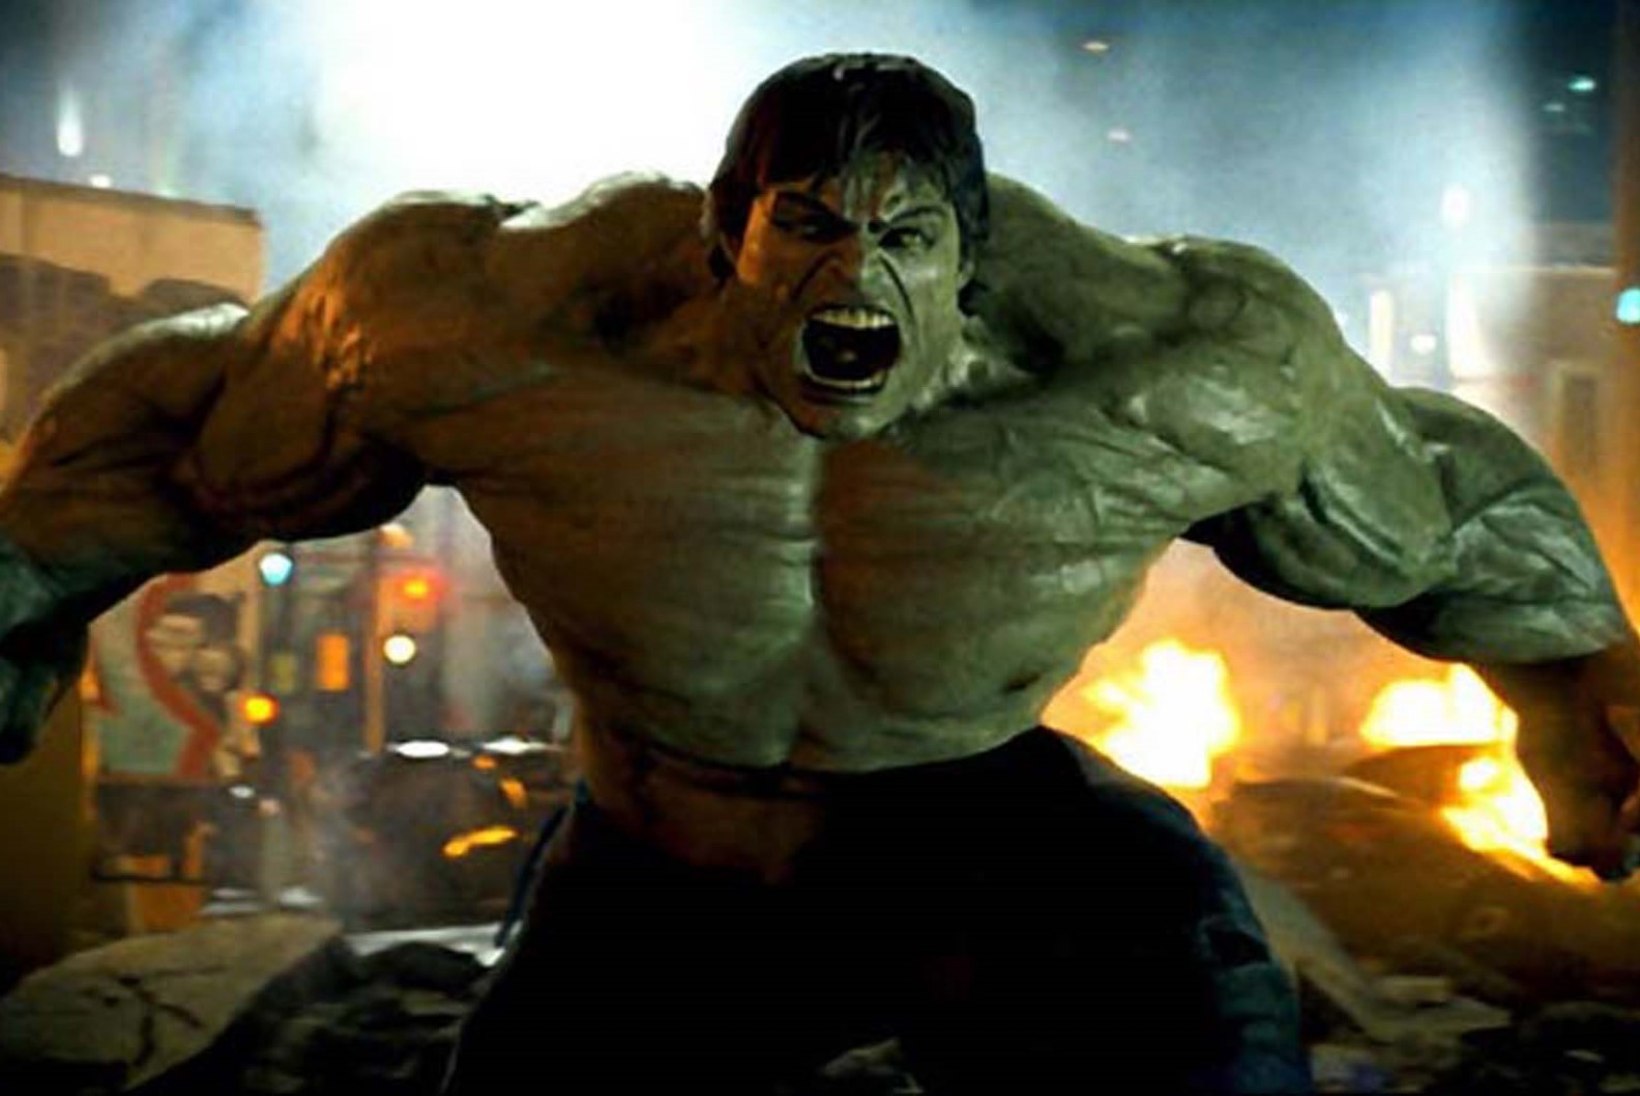 FOTOD | Naissoost Hulk! Ameeriklannast suunamudija keha pärineb justkui mõnest joonisfilmist